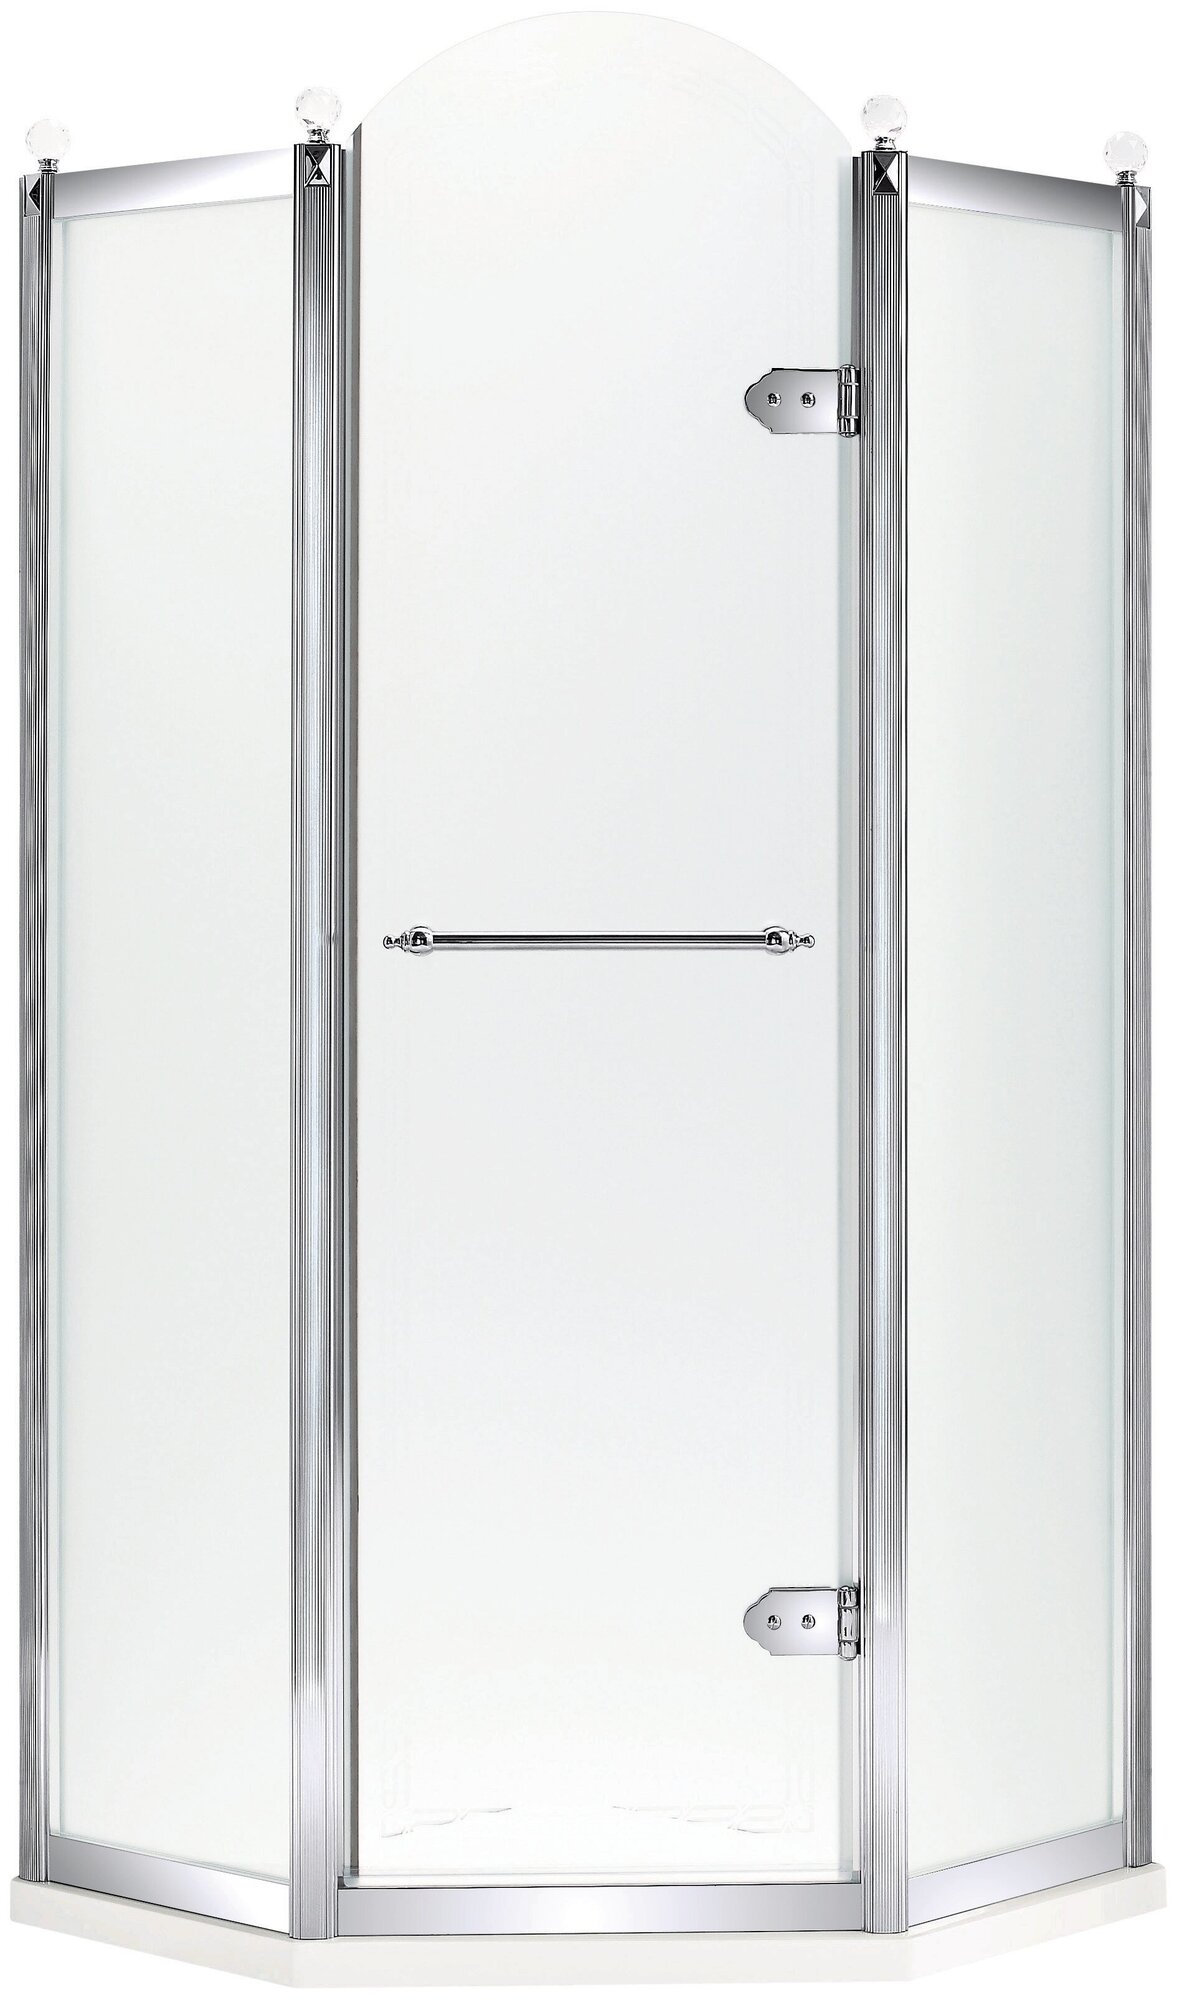 Душевое ограждение ORANS, модель SR-1656 Silver, размер 1000*1000*2000 мм. Дверь распашная.